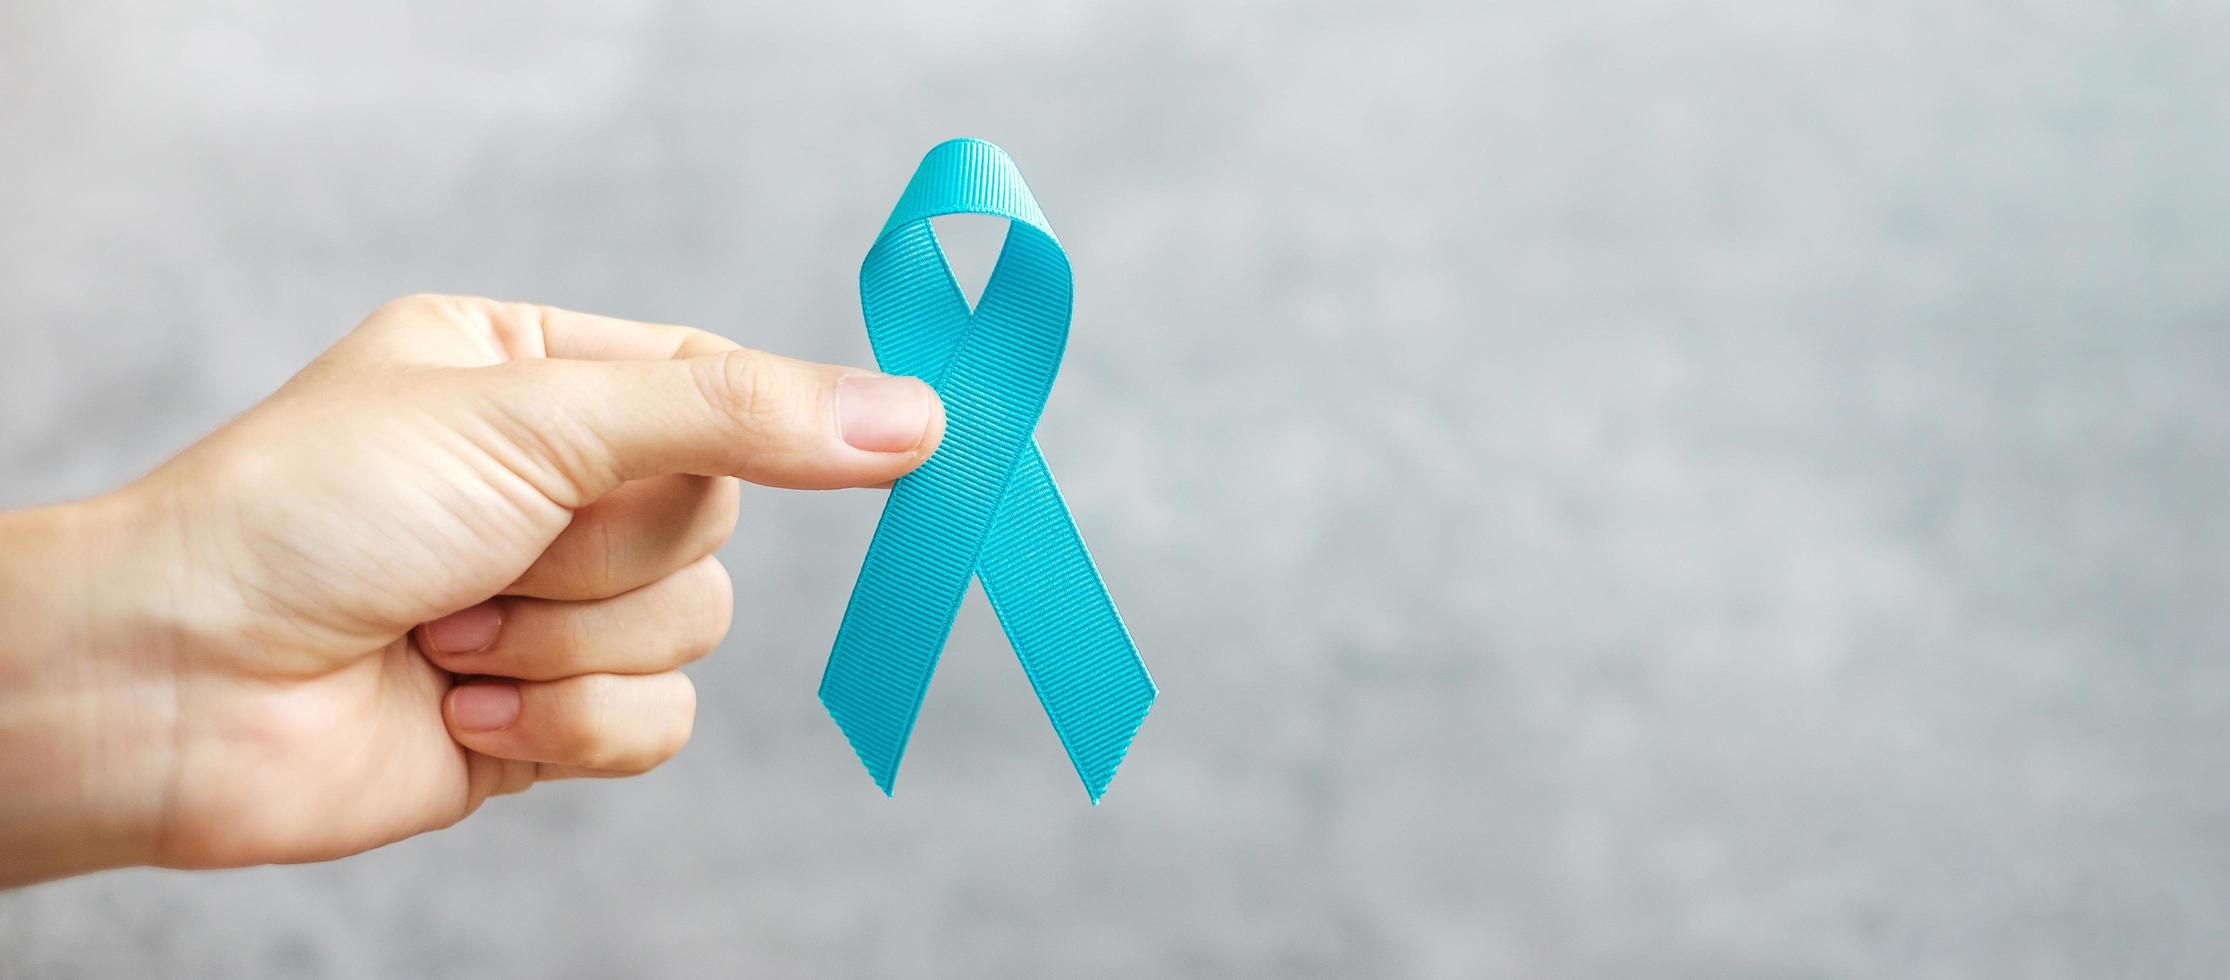 novembre mois de sensibilisation au cancer de la prostate, homme tenant un ruban bleu clair pour soutenir les personnes vivant et malades. soins de santé, hommes internationaux, père, journée mondiale du cancer et concept de journée mondiale du diabète photo